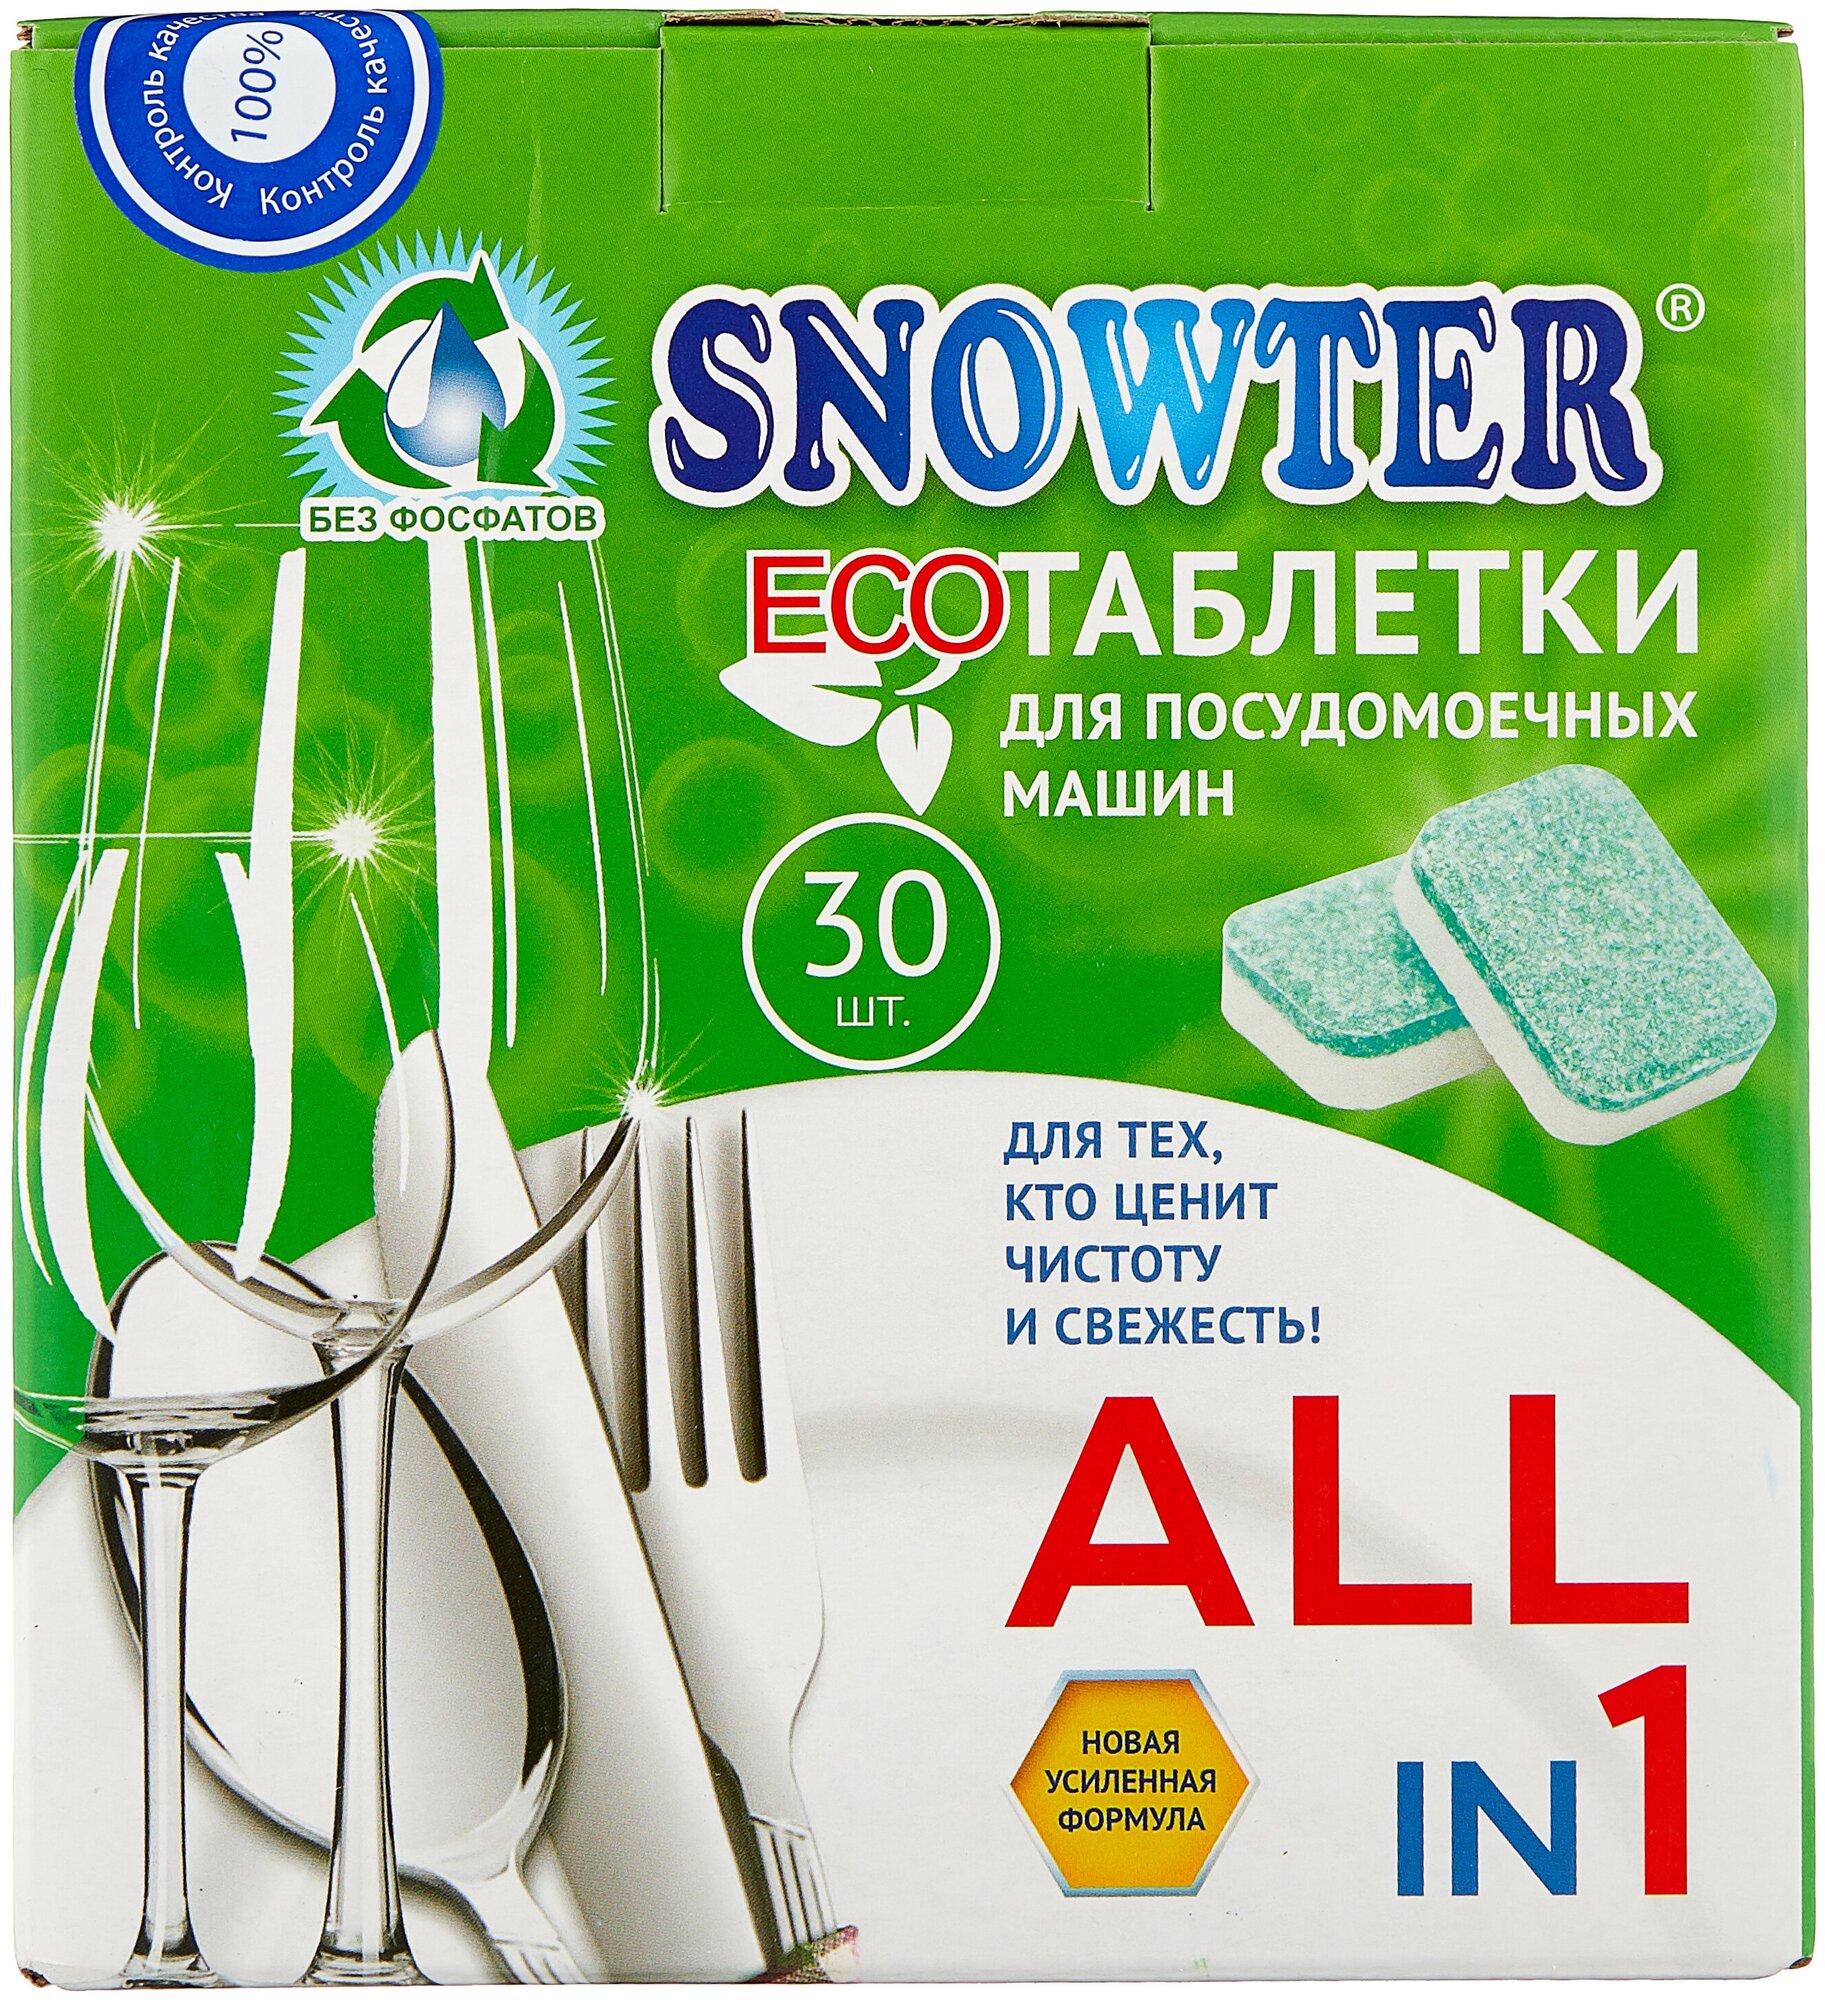 Таблетки для посудомоечной машины Snowter Эко таблетки, 30 шт., 0.02 кг - фотография № 2